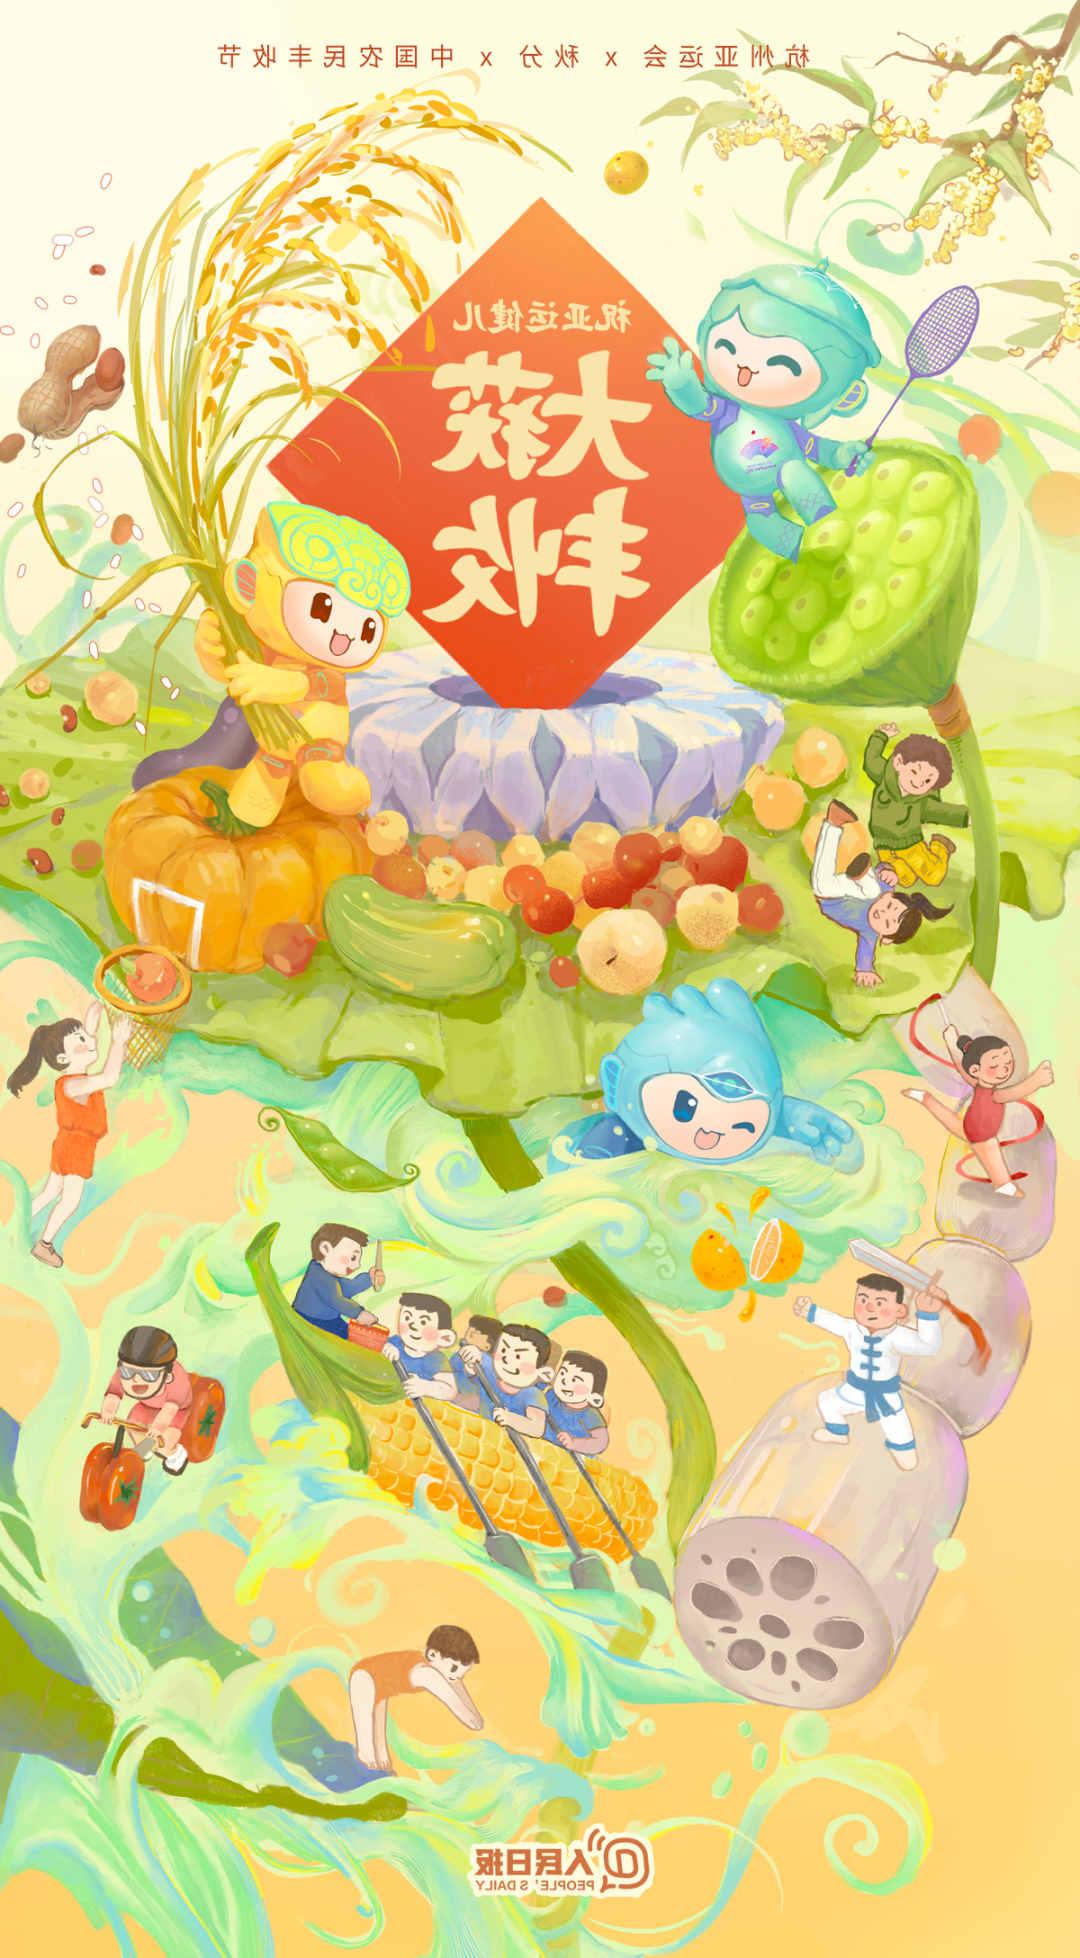 杭州亚运会×秋分×中国农民丰收节！祝亚运健儿大获丰收！